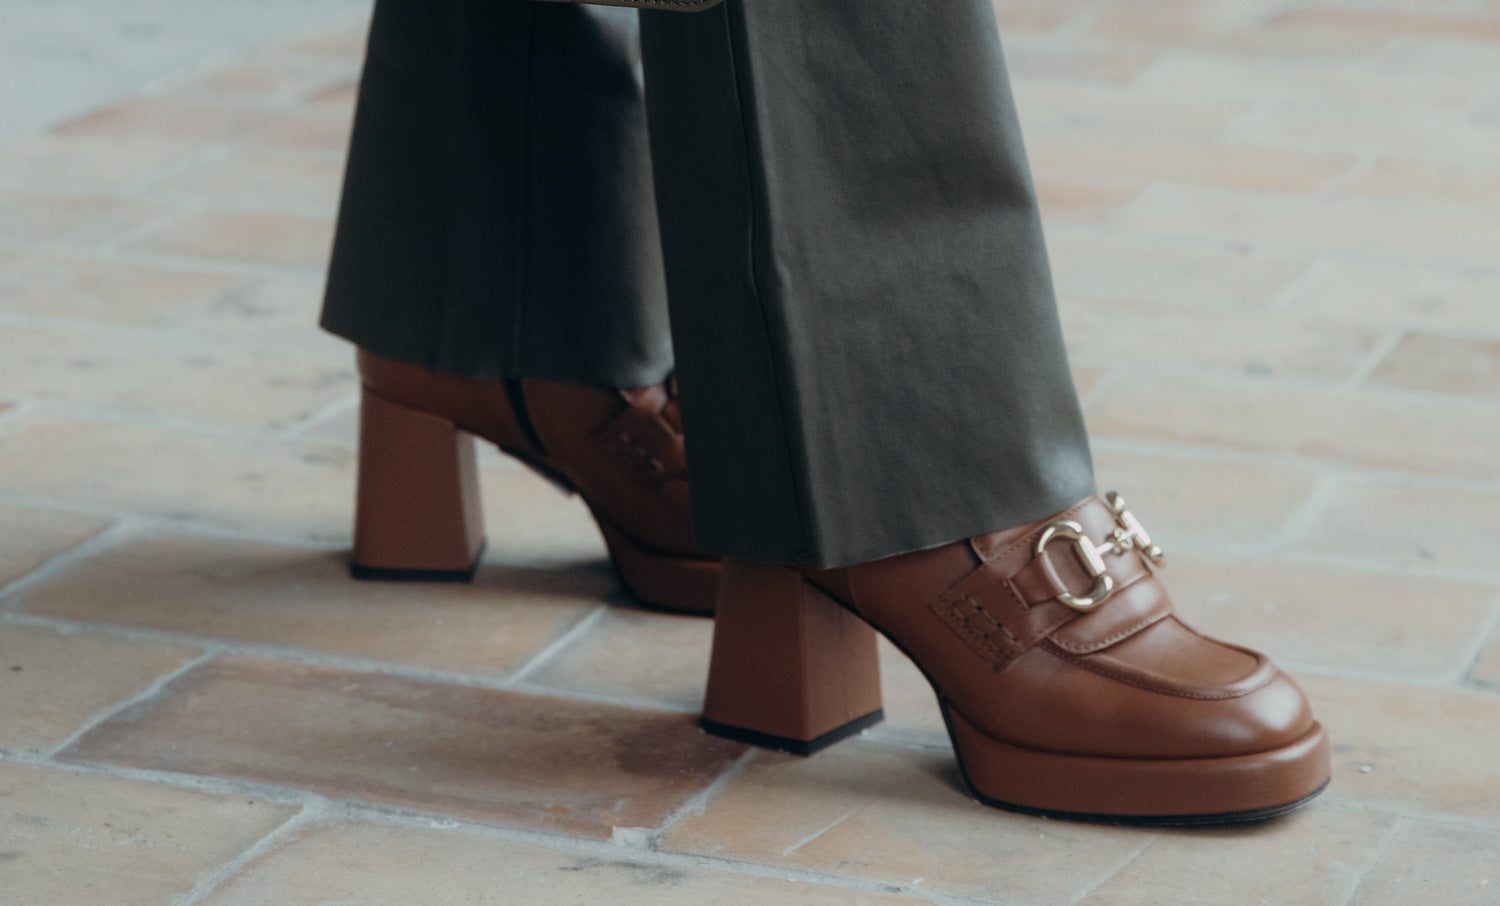 Hoe kies je de perfecte schoen? 4 tips van Lisa Ralet